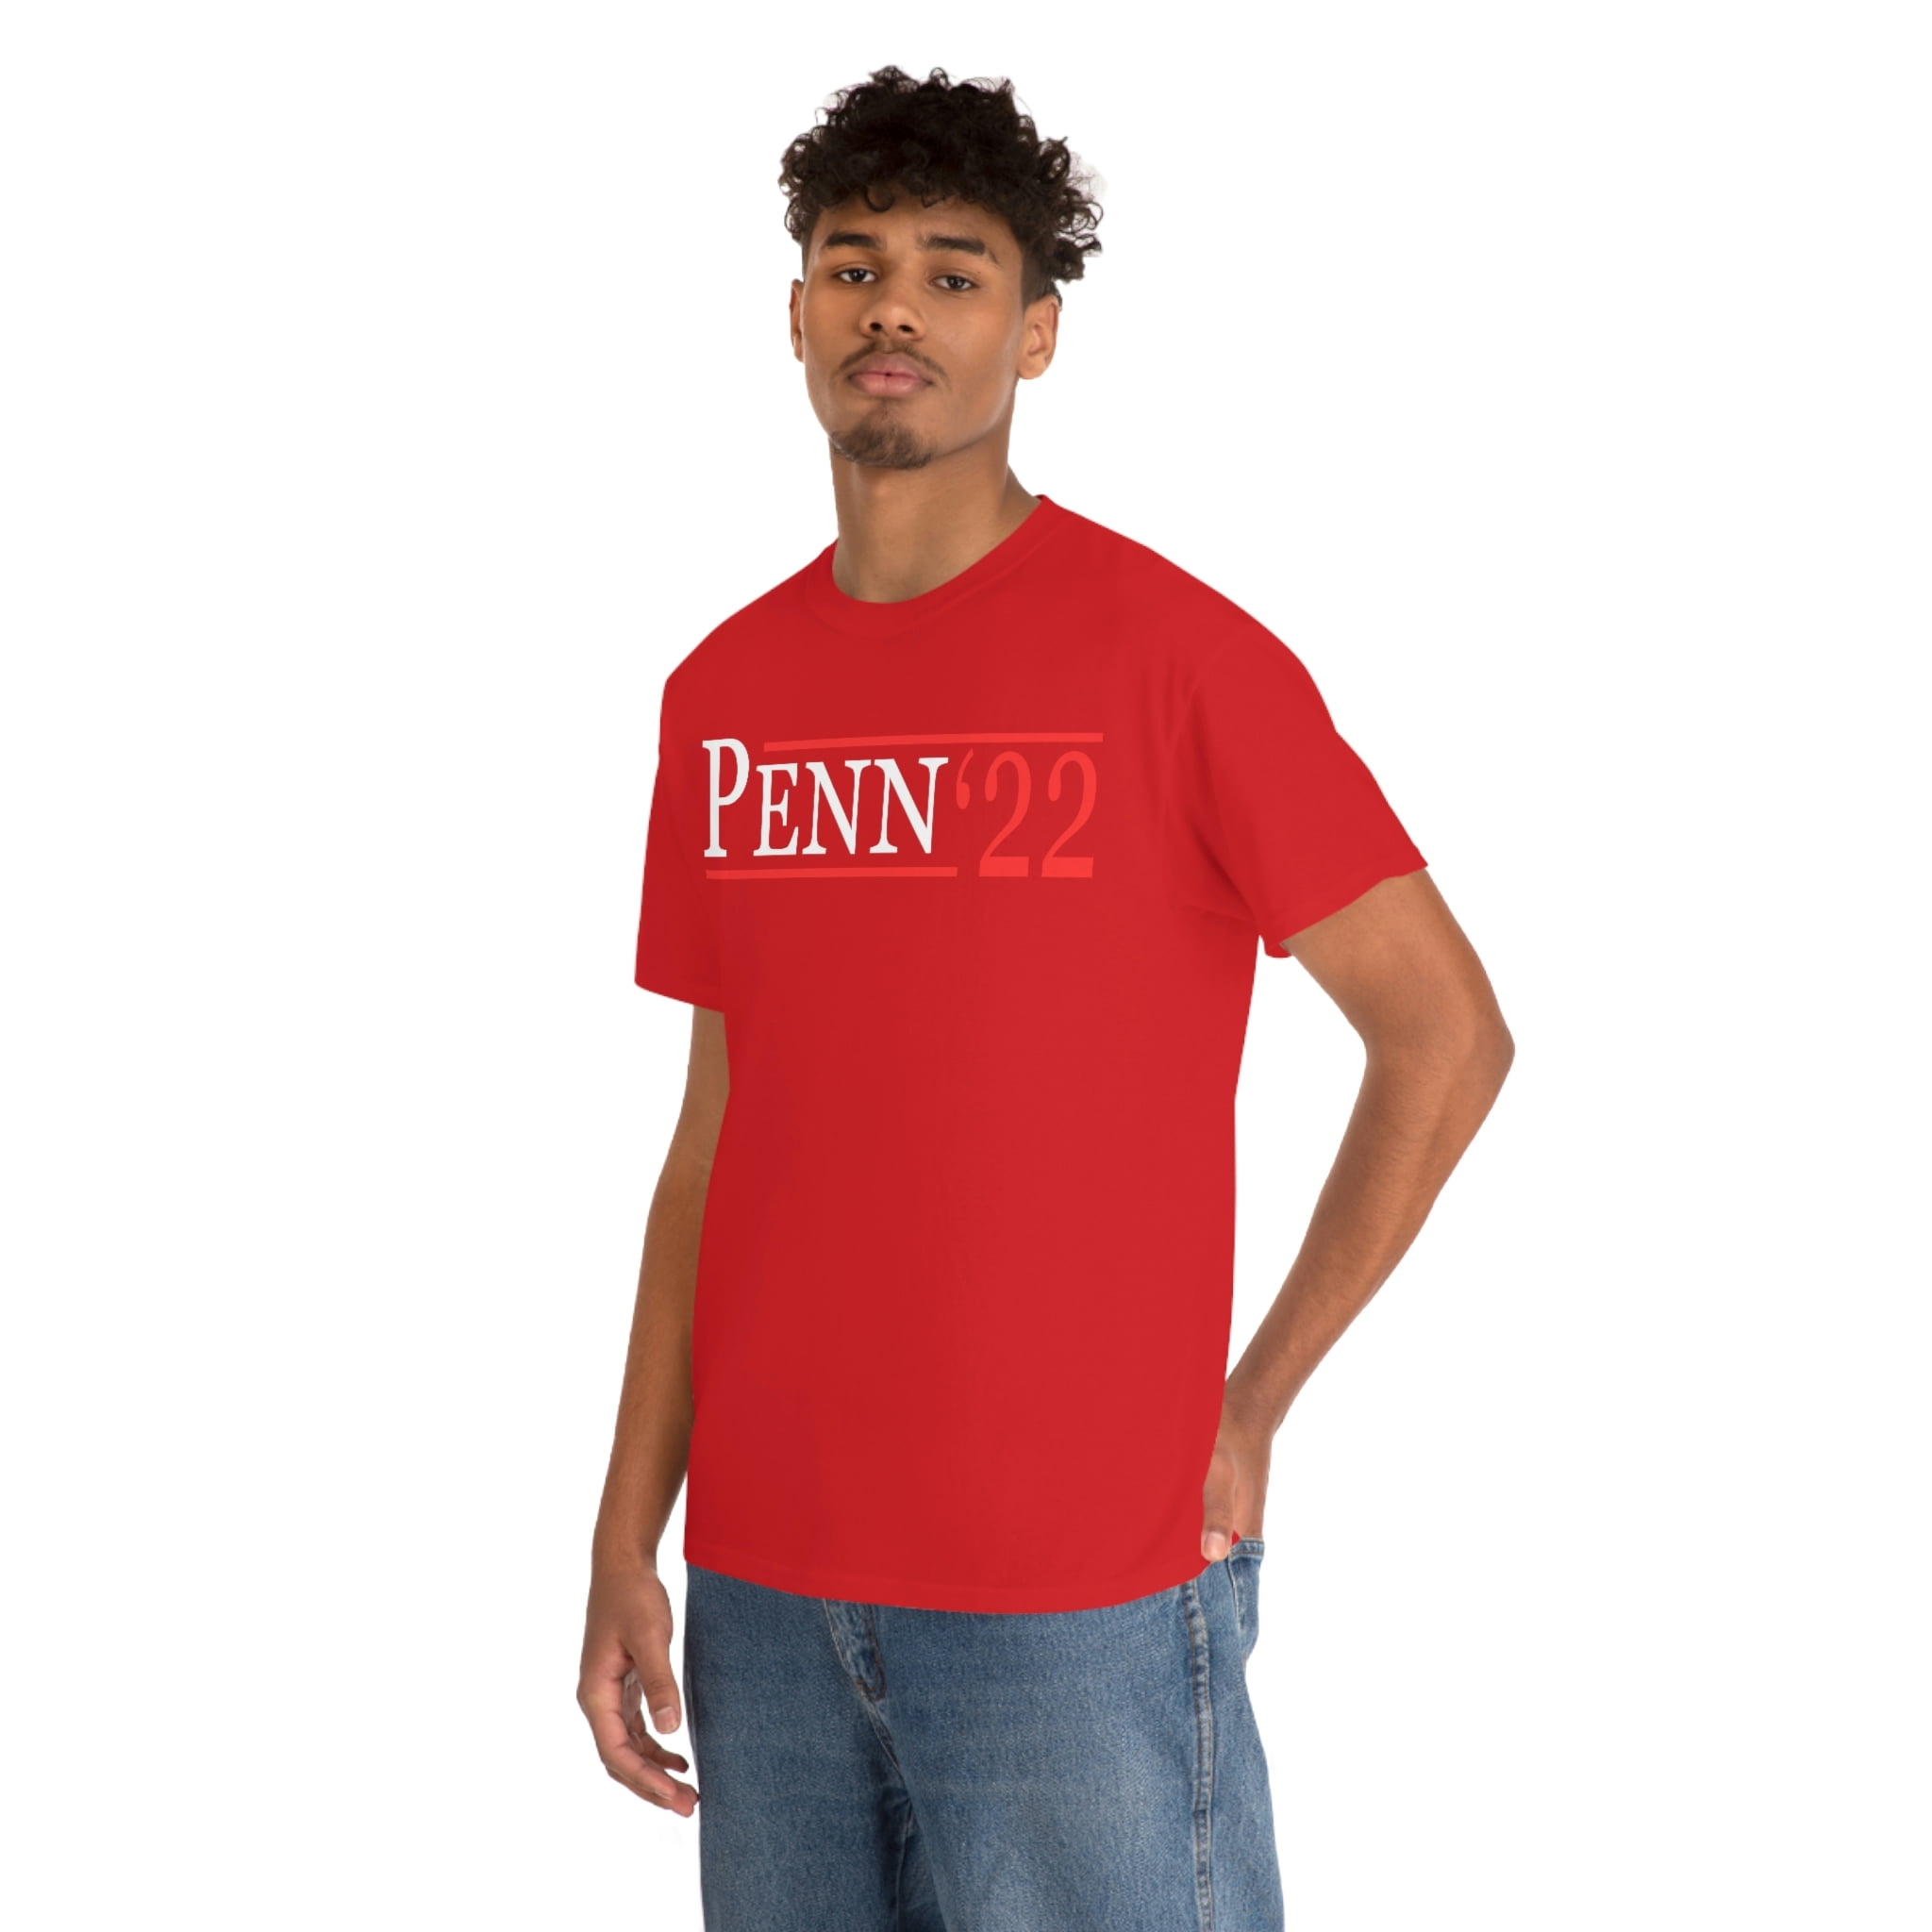 BJ Penn For Governor of Hawaii 2022 T-Shirt 